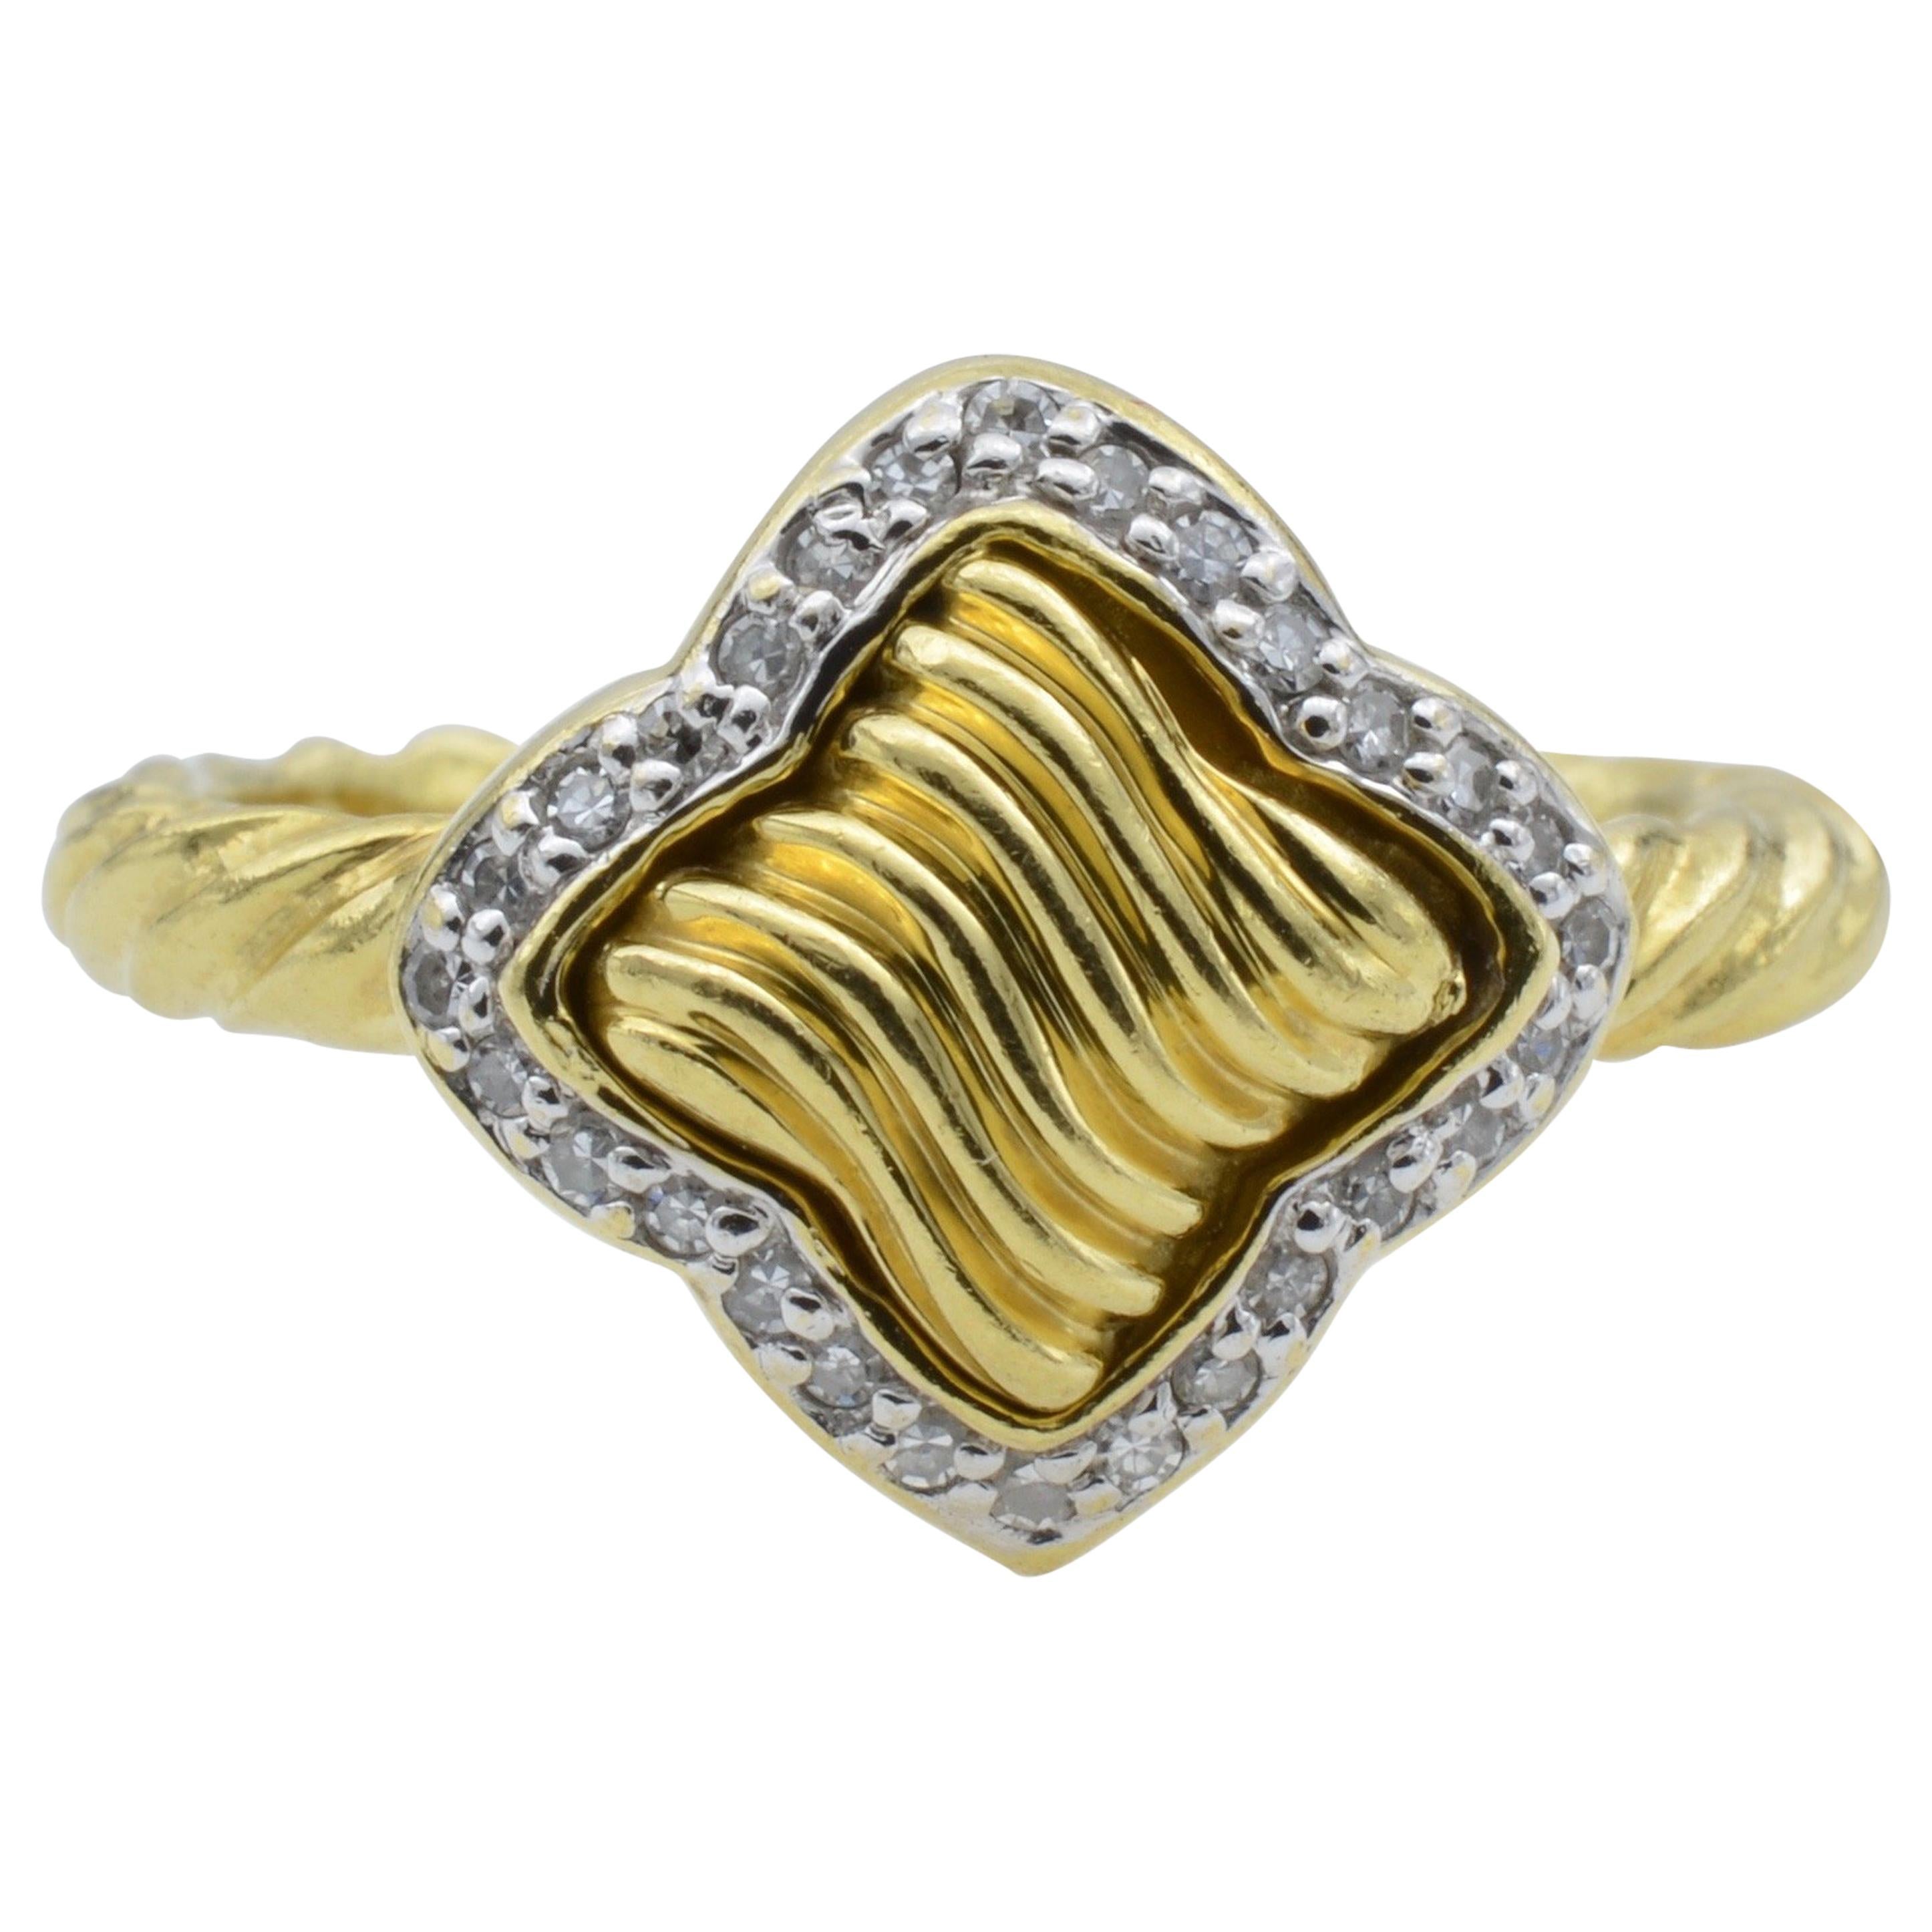 David Yurman 18 Karat Gold and Diamond Quatrefoil Ring